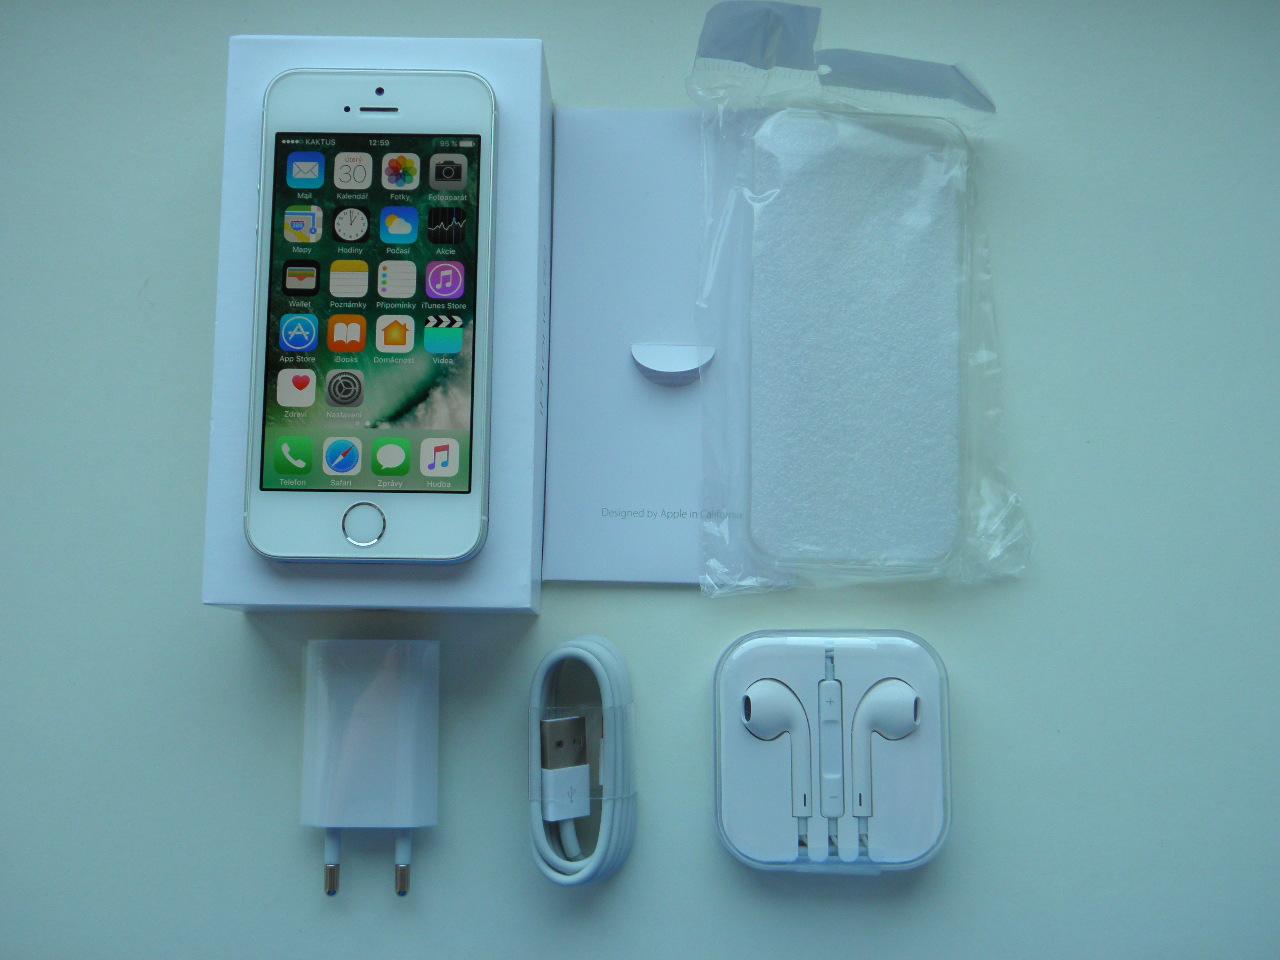 APPLE iPhone SE 64GB Silver - ZÁRUKA 12 MĚSÍCŮ - KOMPLETNÍ BALENÍ - Mobily a smart elektronika